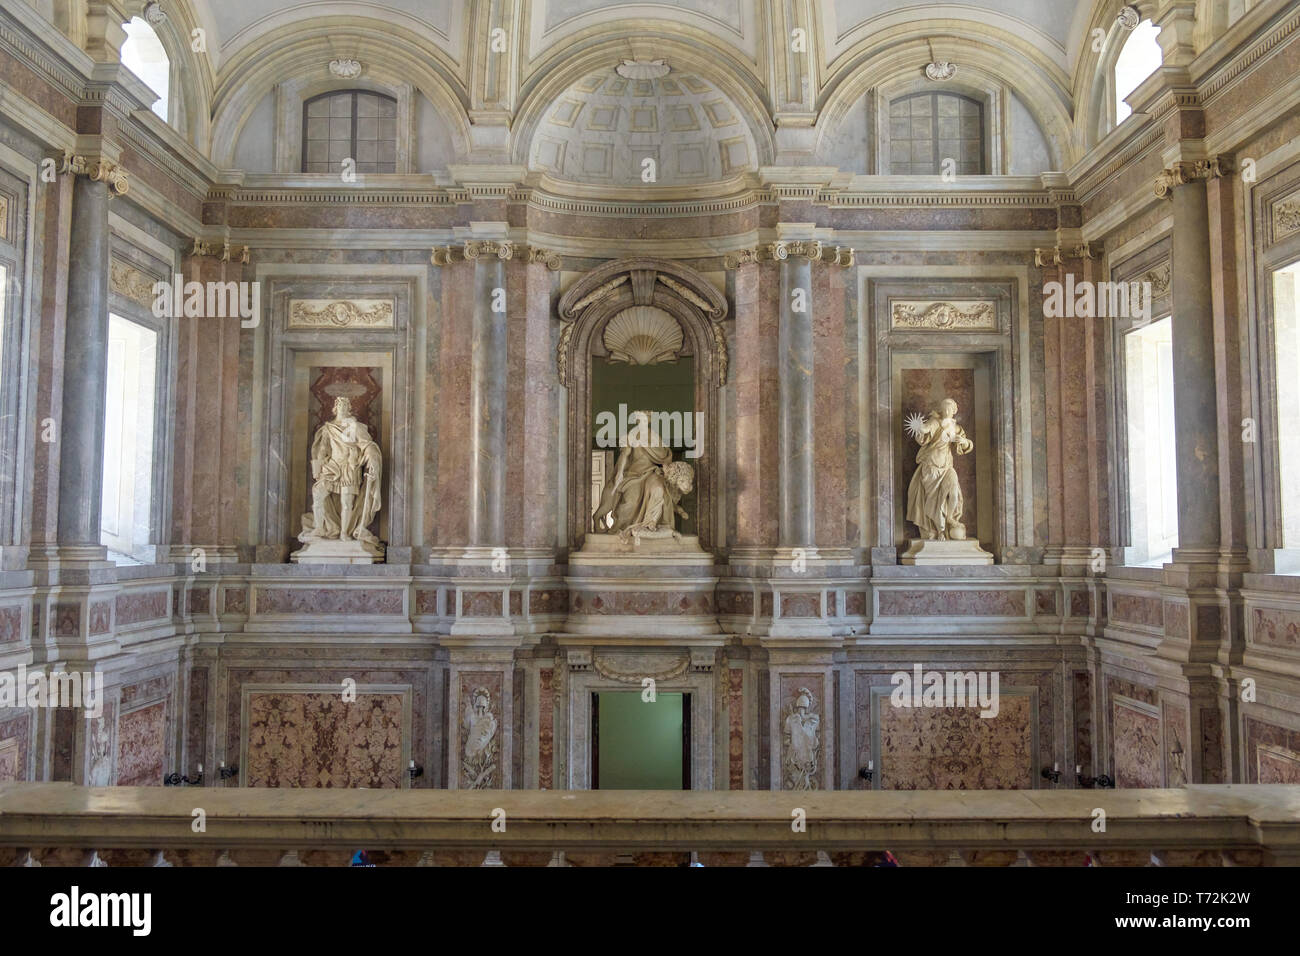 Beim Drehen um über die große Treppe der Reggia di Caserta sie drei riesige Statuen Verdienst, Königlichen Majestät und die Wahrheit sehen. Stockfoto